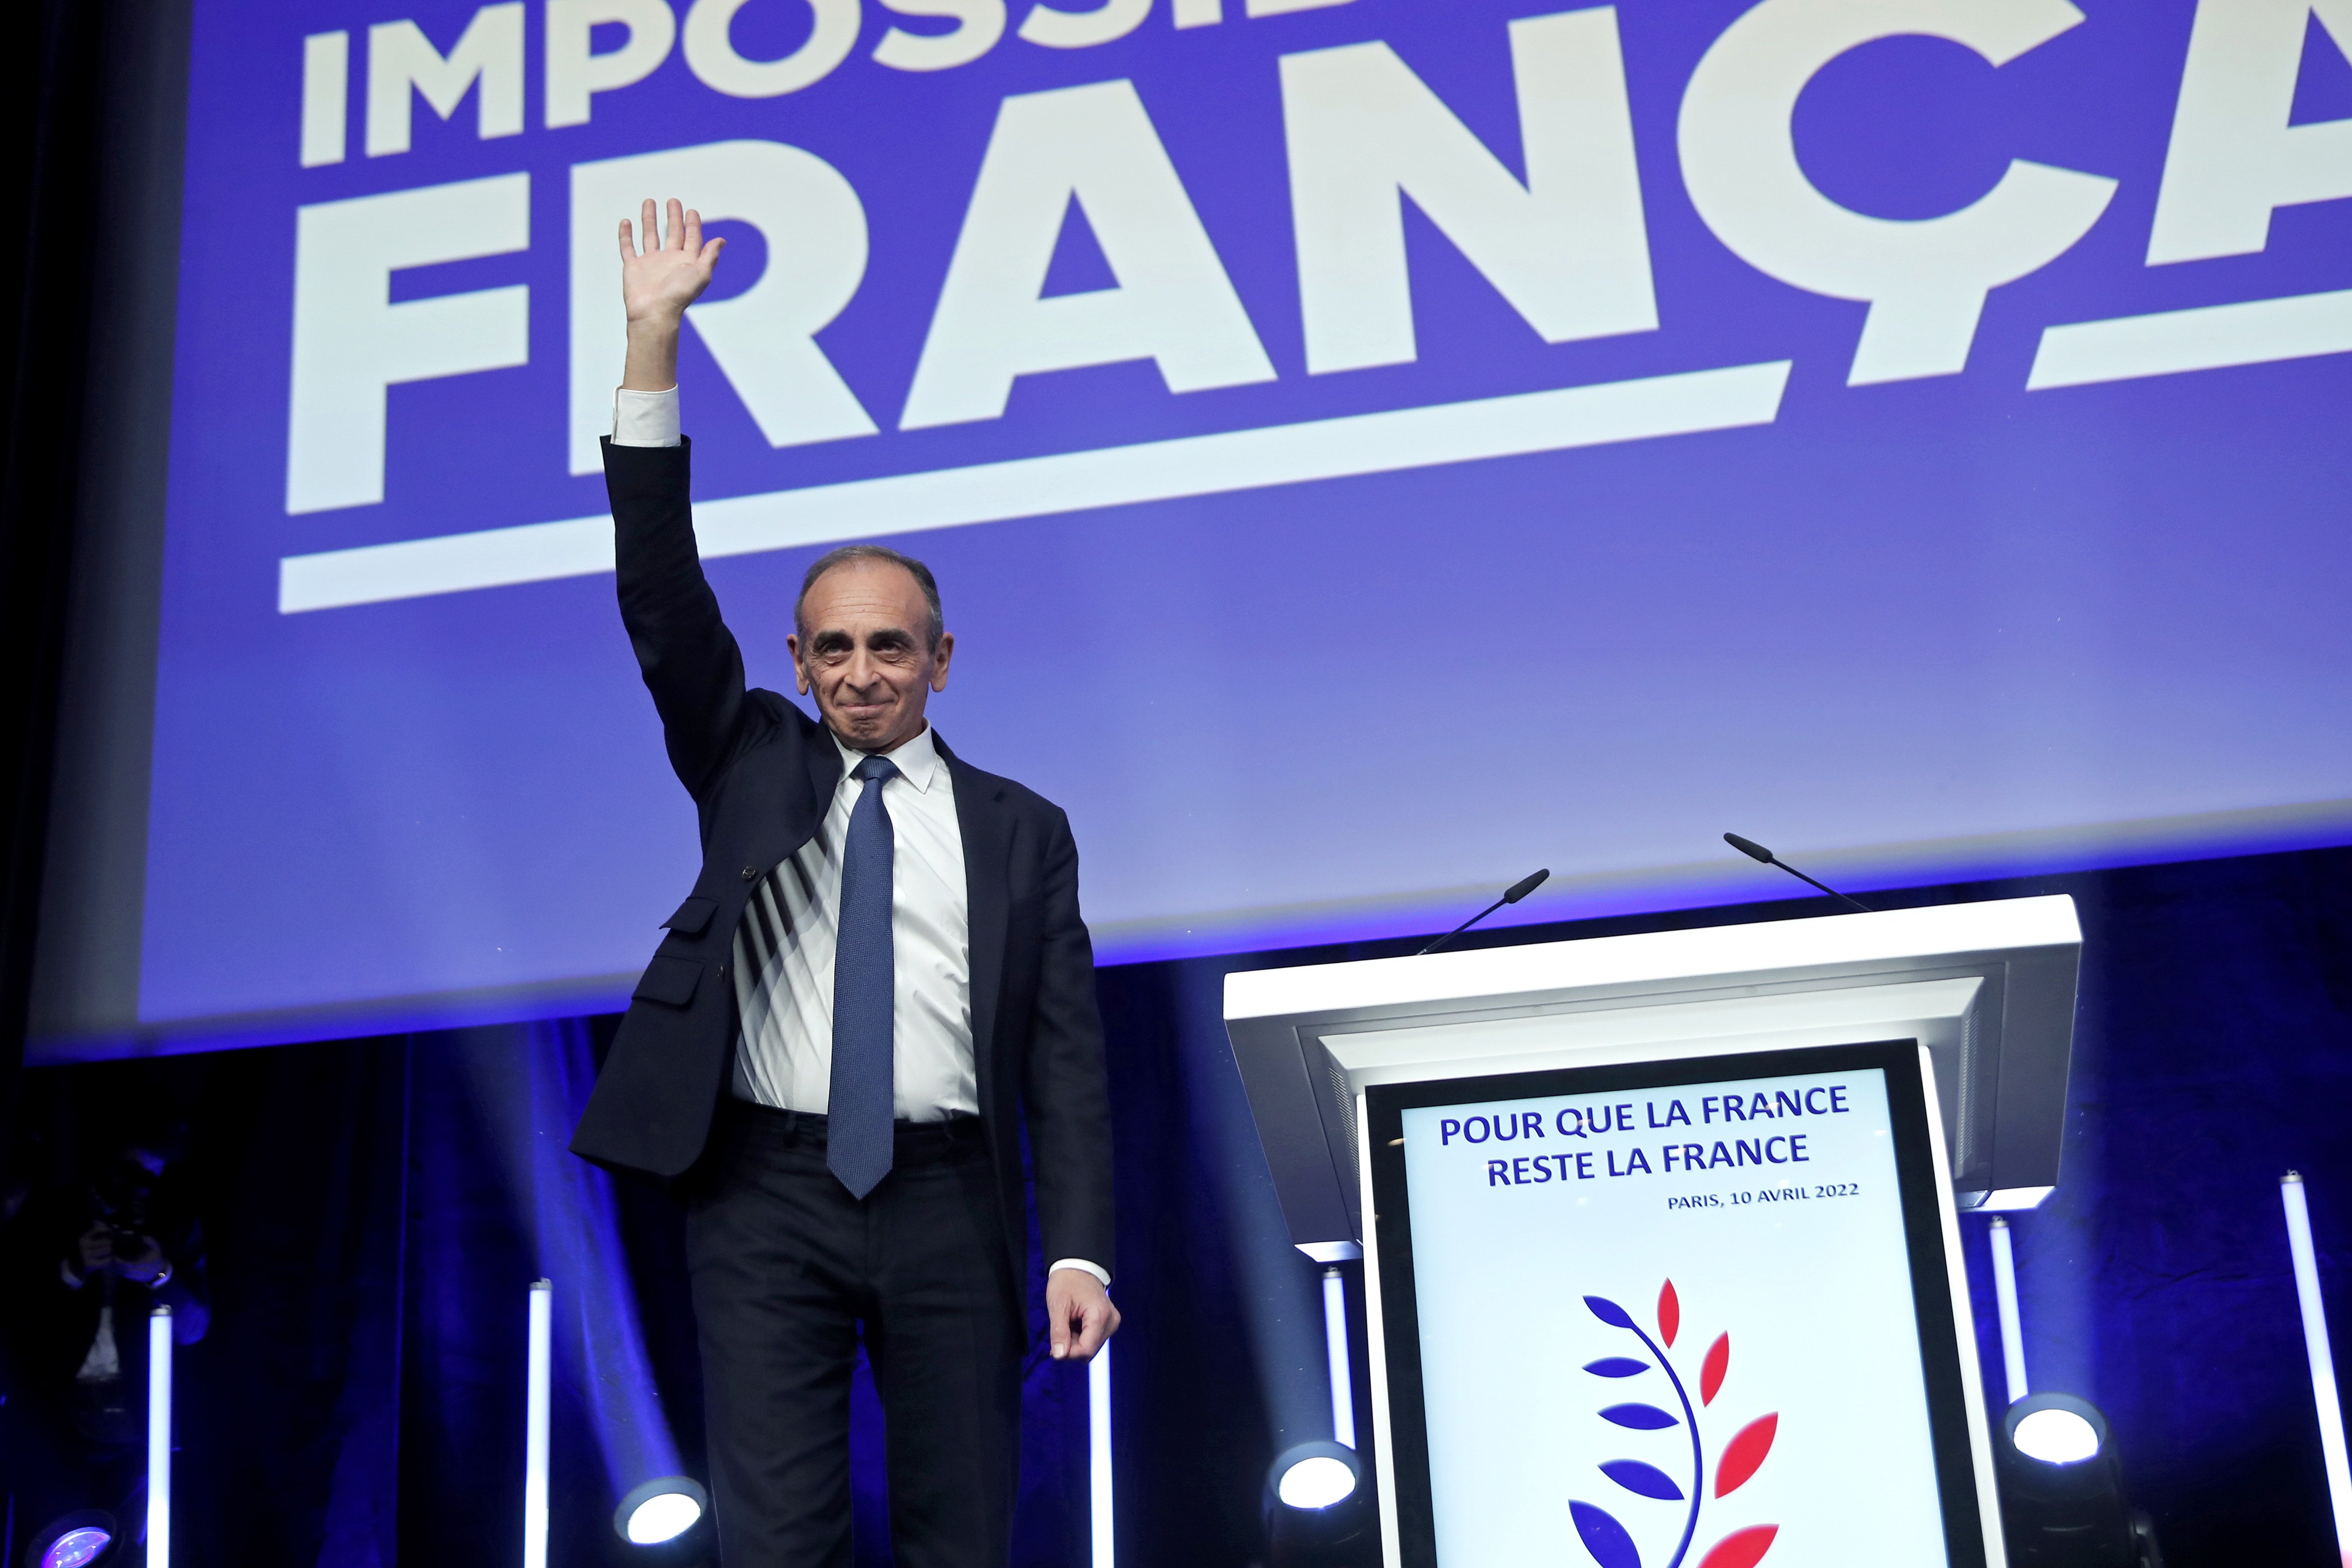 L'extrema dreta de Zemmour guanya el vot dels francesos a Rússia